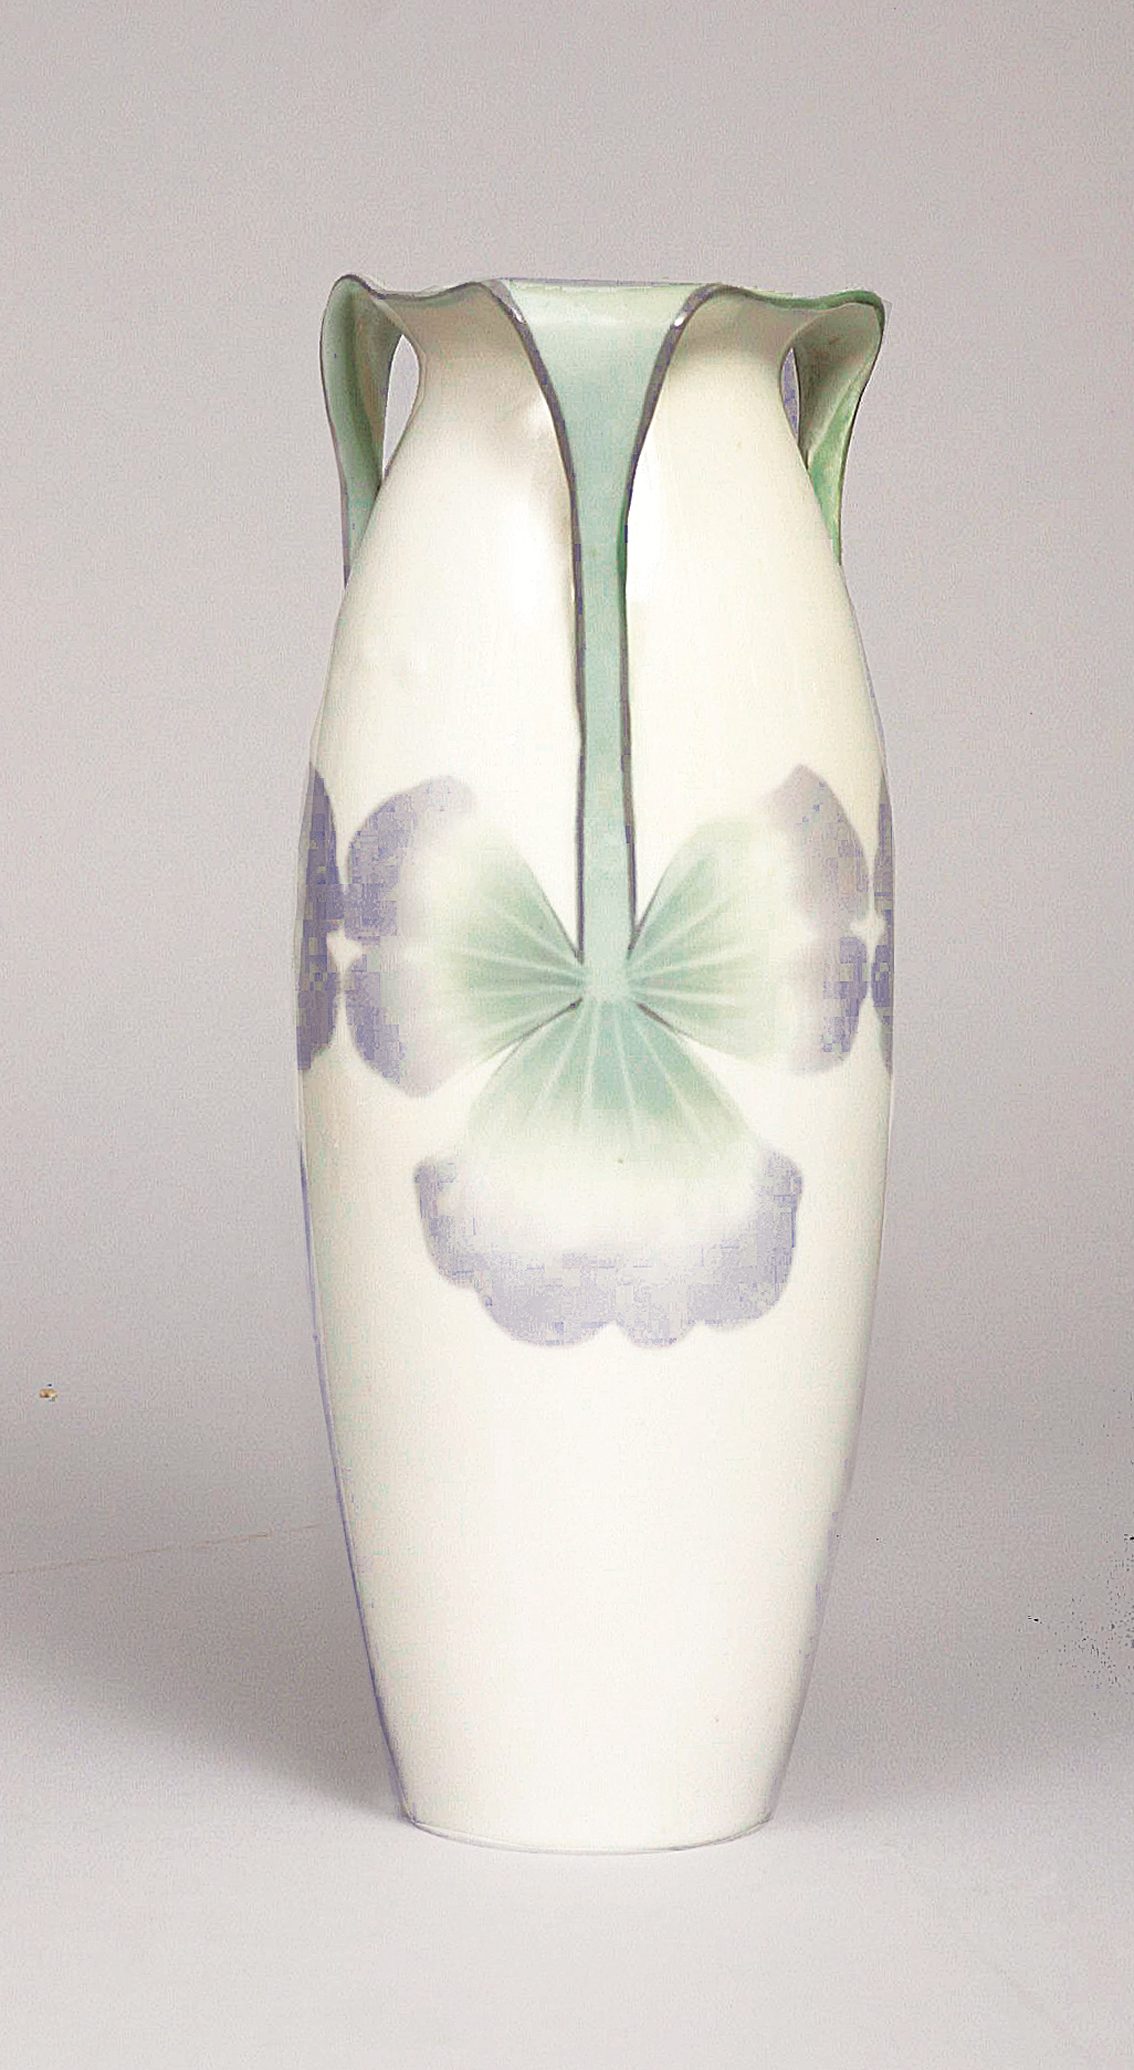 An art nouveau vase with flowers